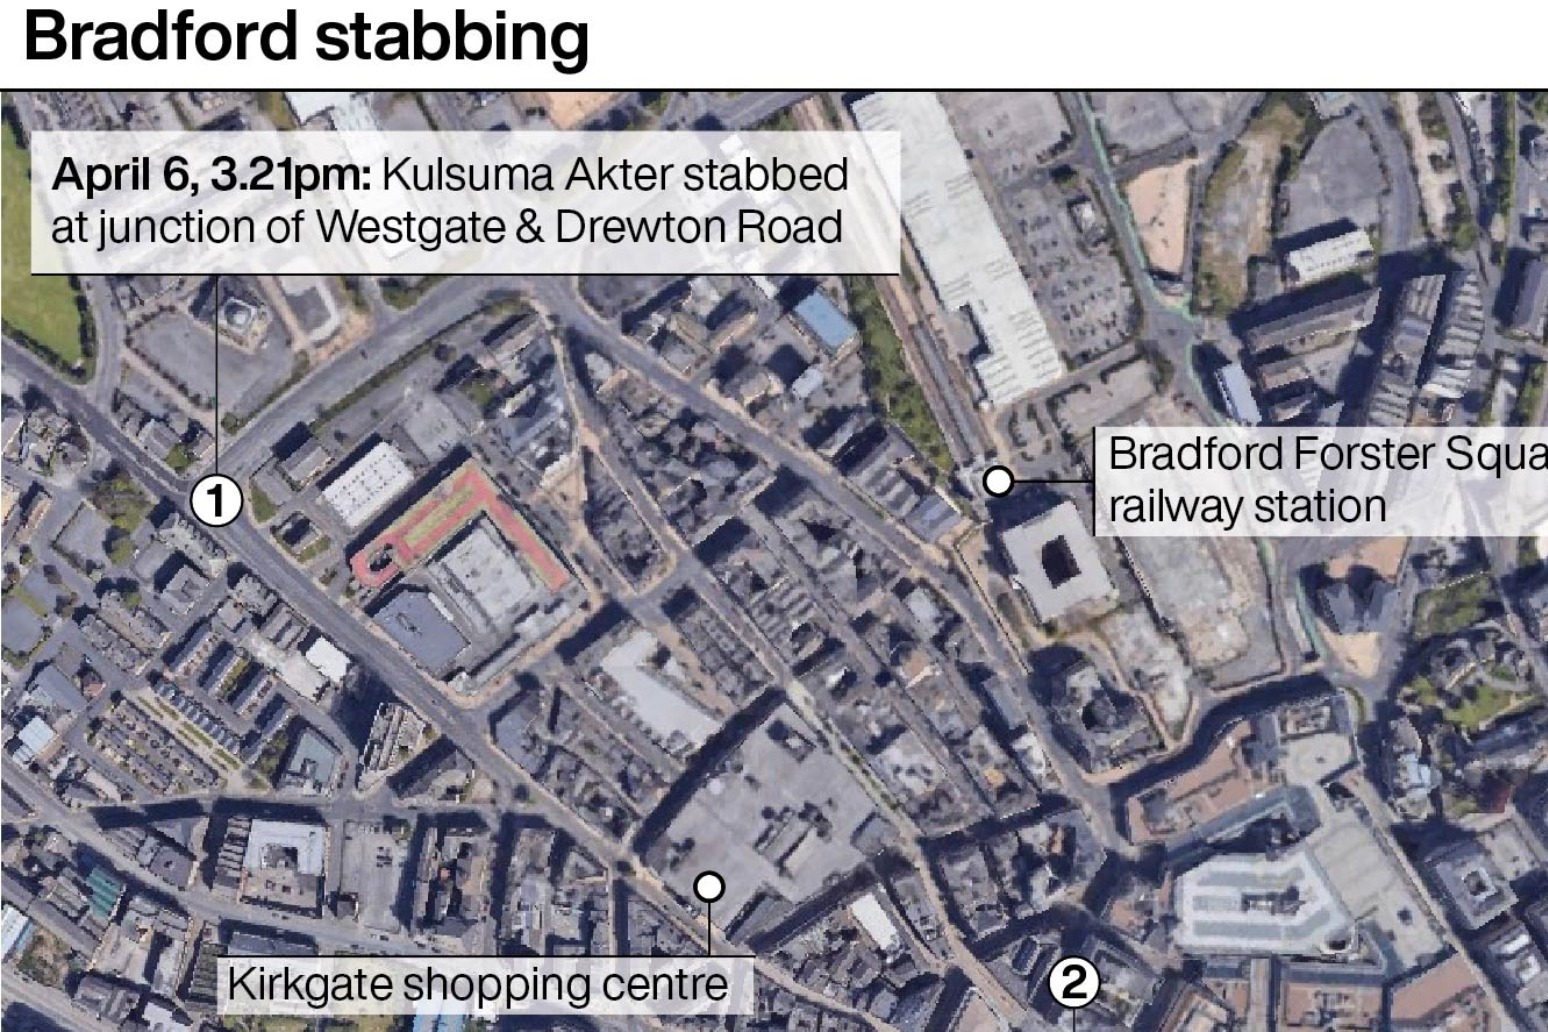 Man arrested after Bradford stabbing – Steel FM